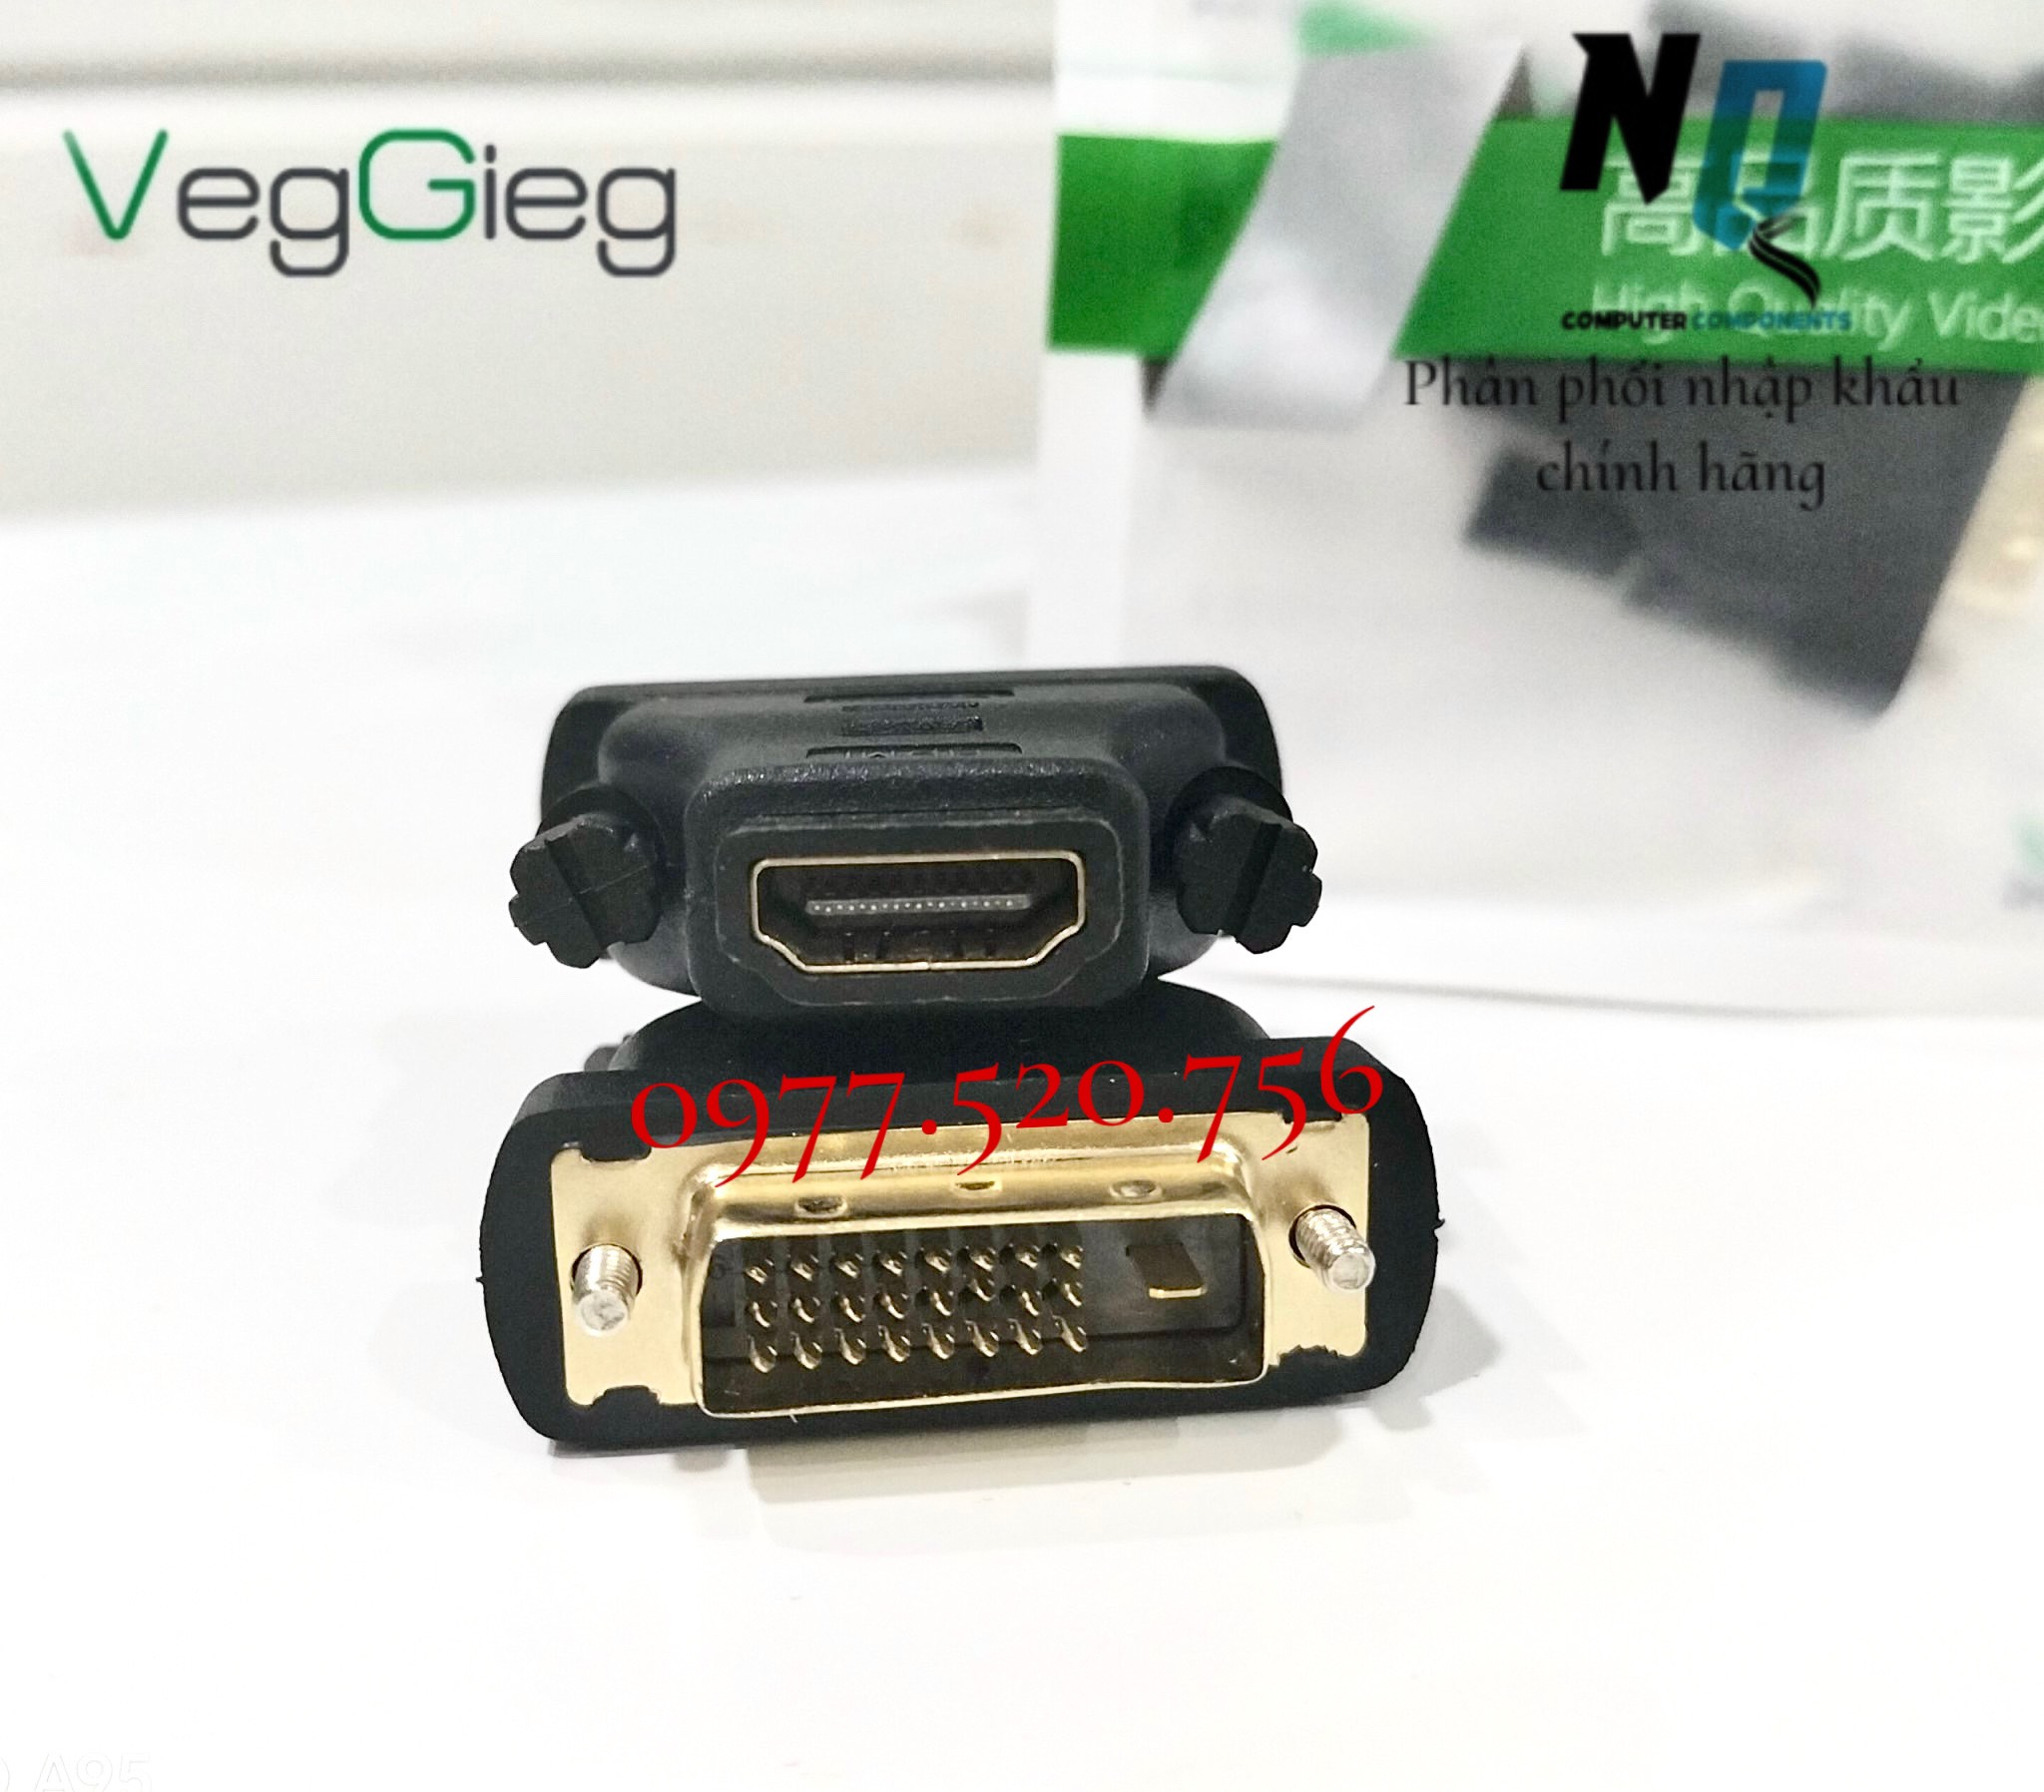 Đầu chuyển đổi DVI sang HDMI VEGGIEG VS107  chính hãng